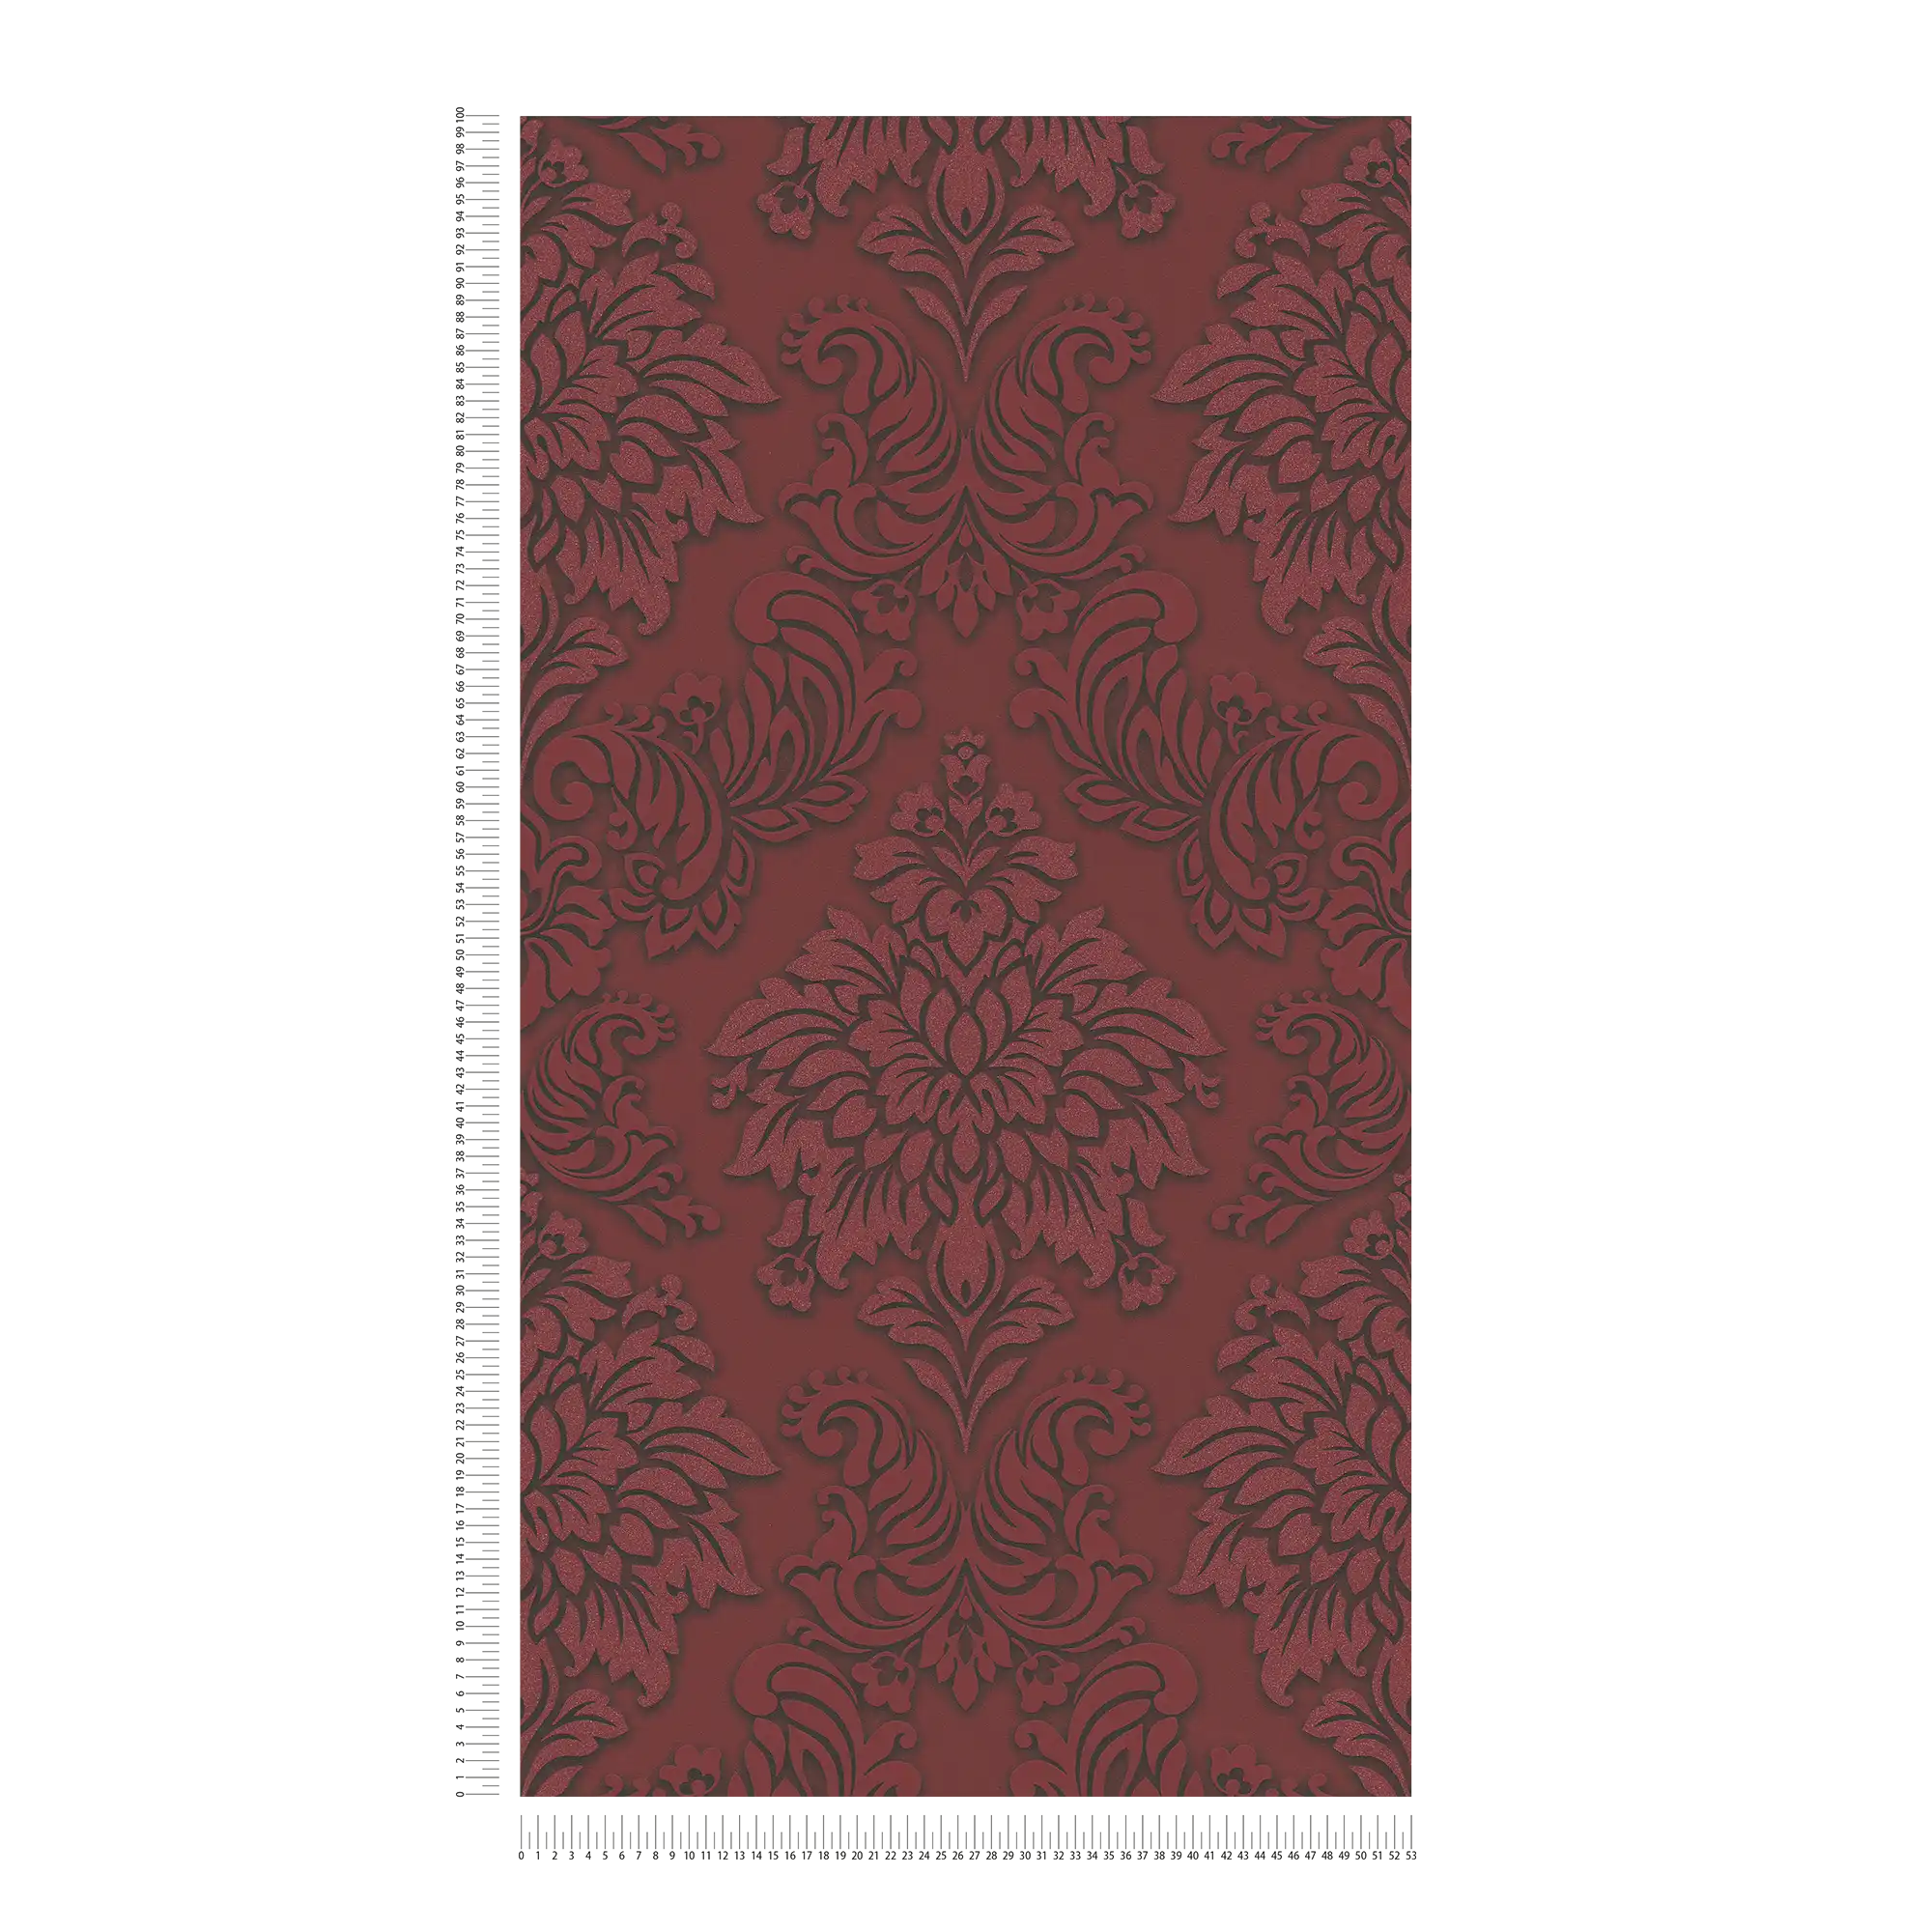             Papier peint baroque Ornements avec effet scintillant - rouge, argent, noir
        